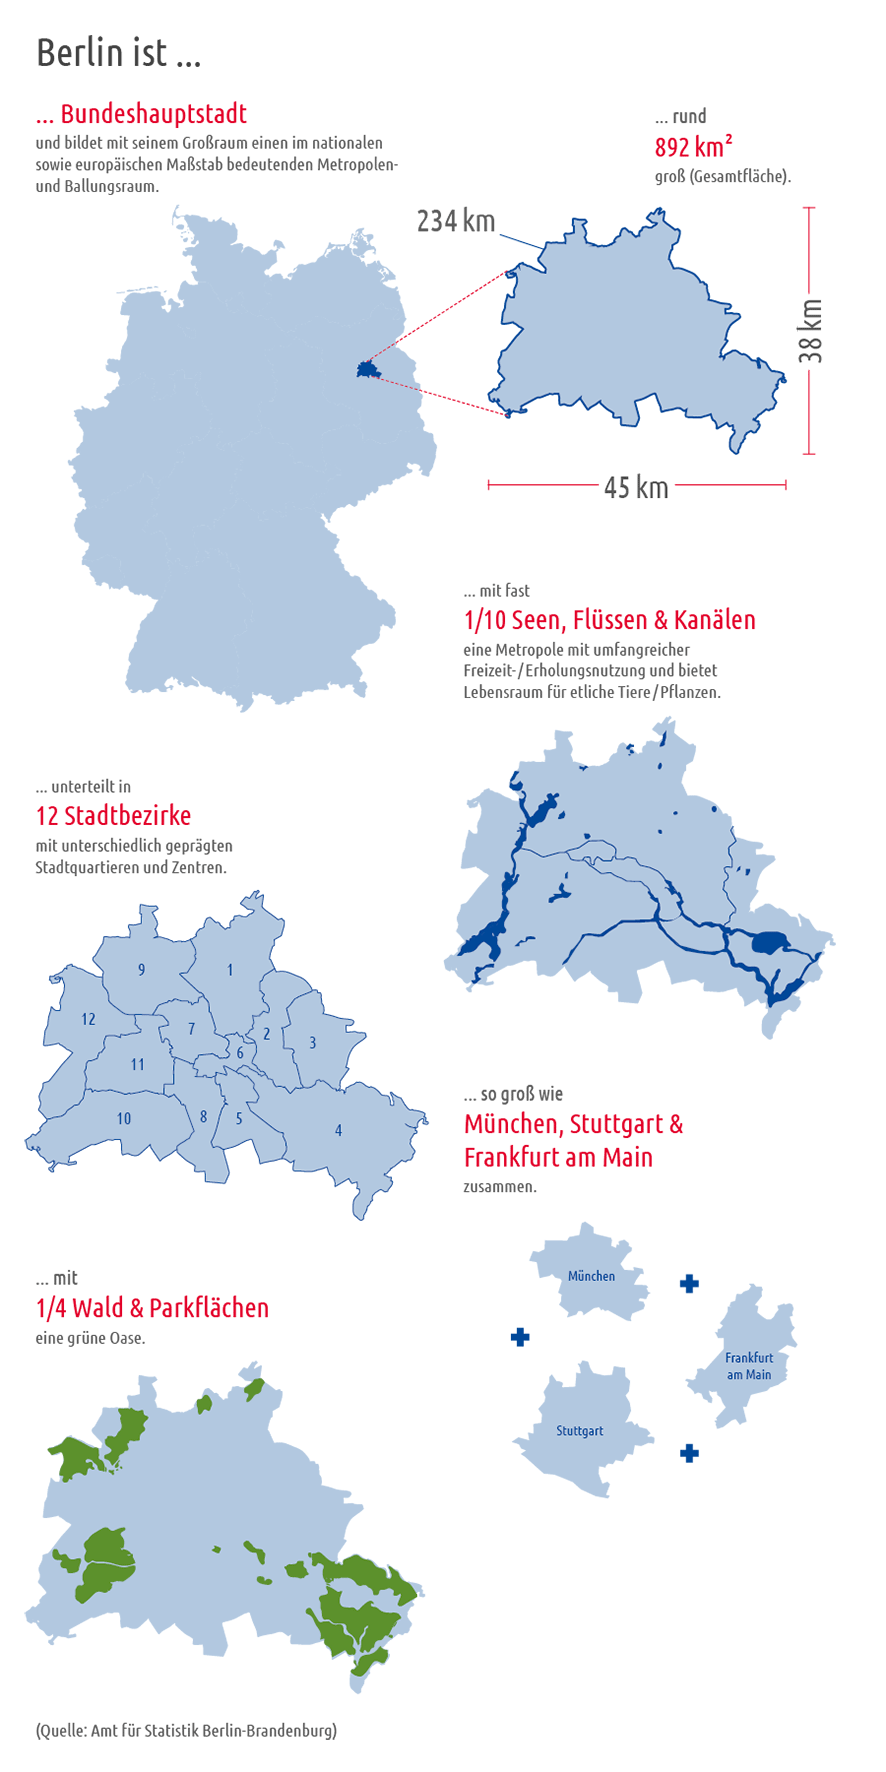 Flächendaten zu Berlin